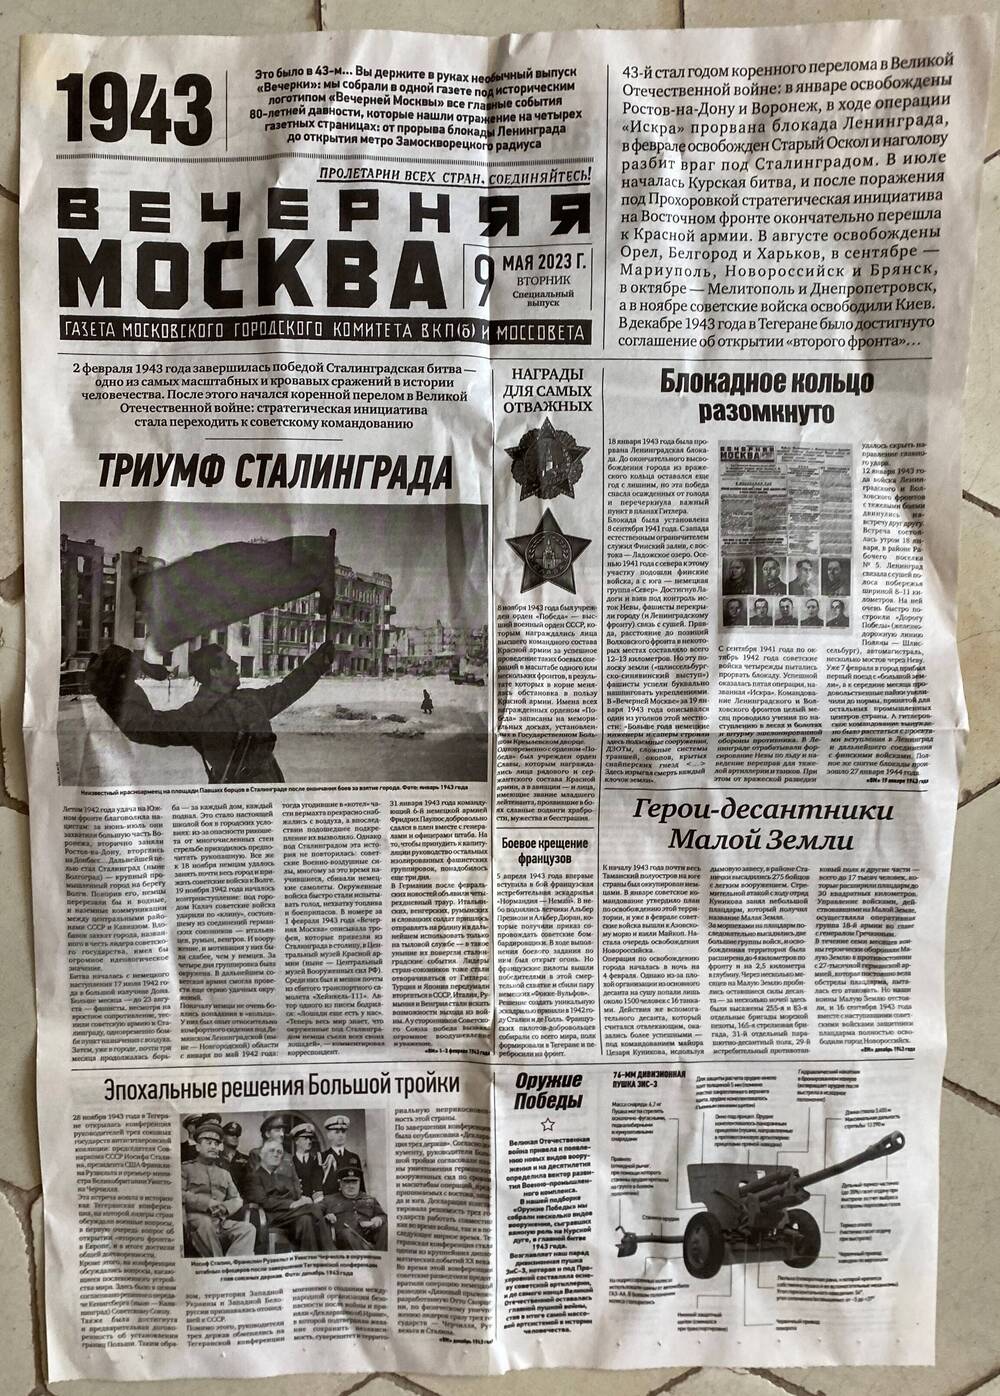 Газета « Вечерняя Москва»  за 9 мая 2023 года, специальный выпуск , бумага,